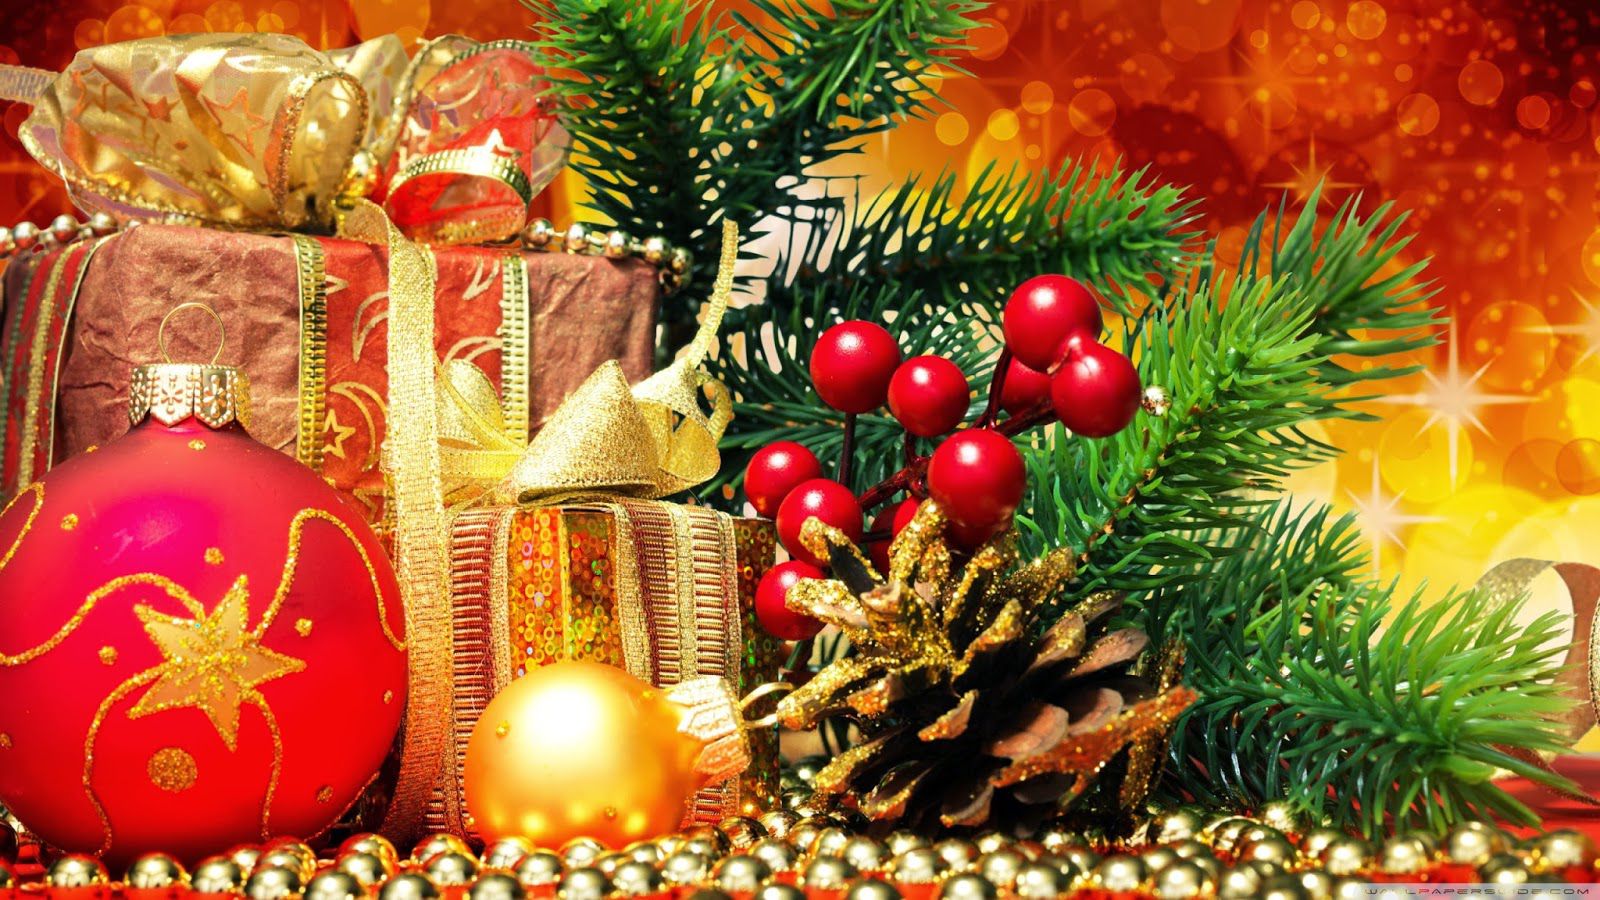 navidad fondos de pantalla hd,decoración navideña,decoración navideña,árbol de navidad,navidad,nochebuena